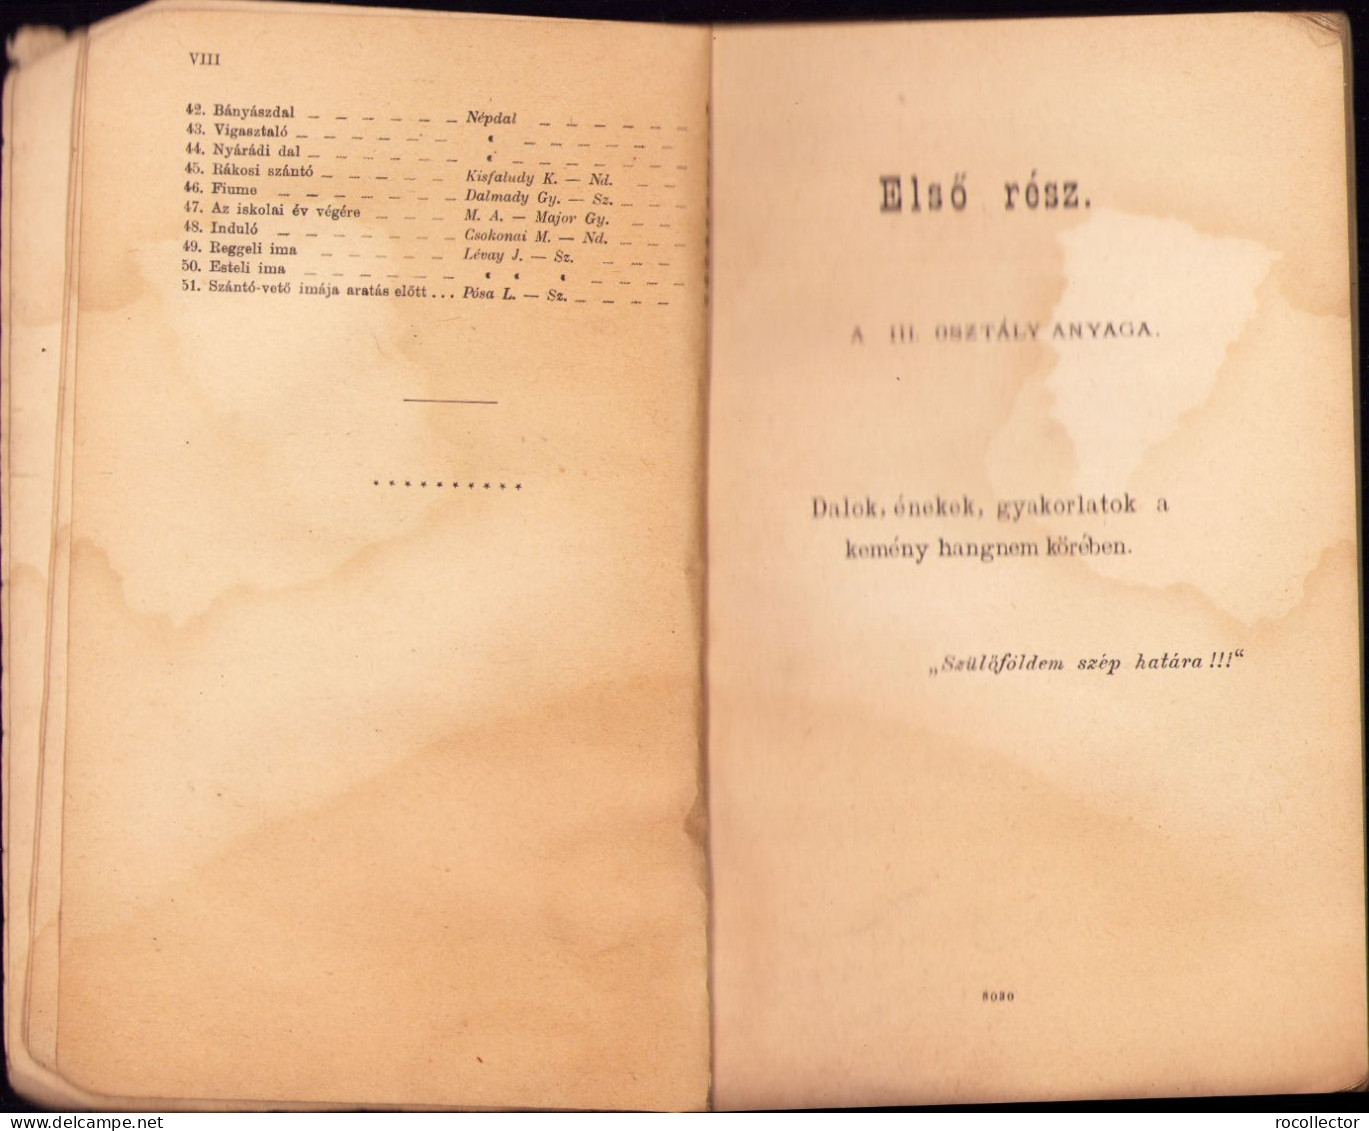 Dalos könyv a népiskolák számára irta Sztankó Béla 1906 Budapest C1169